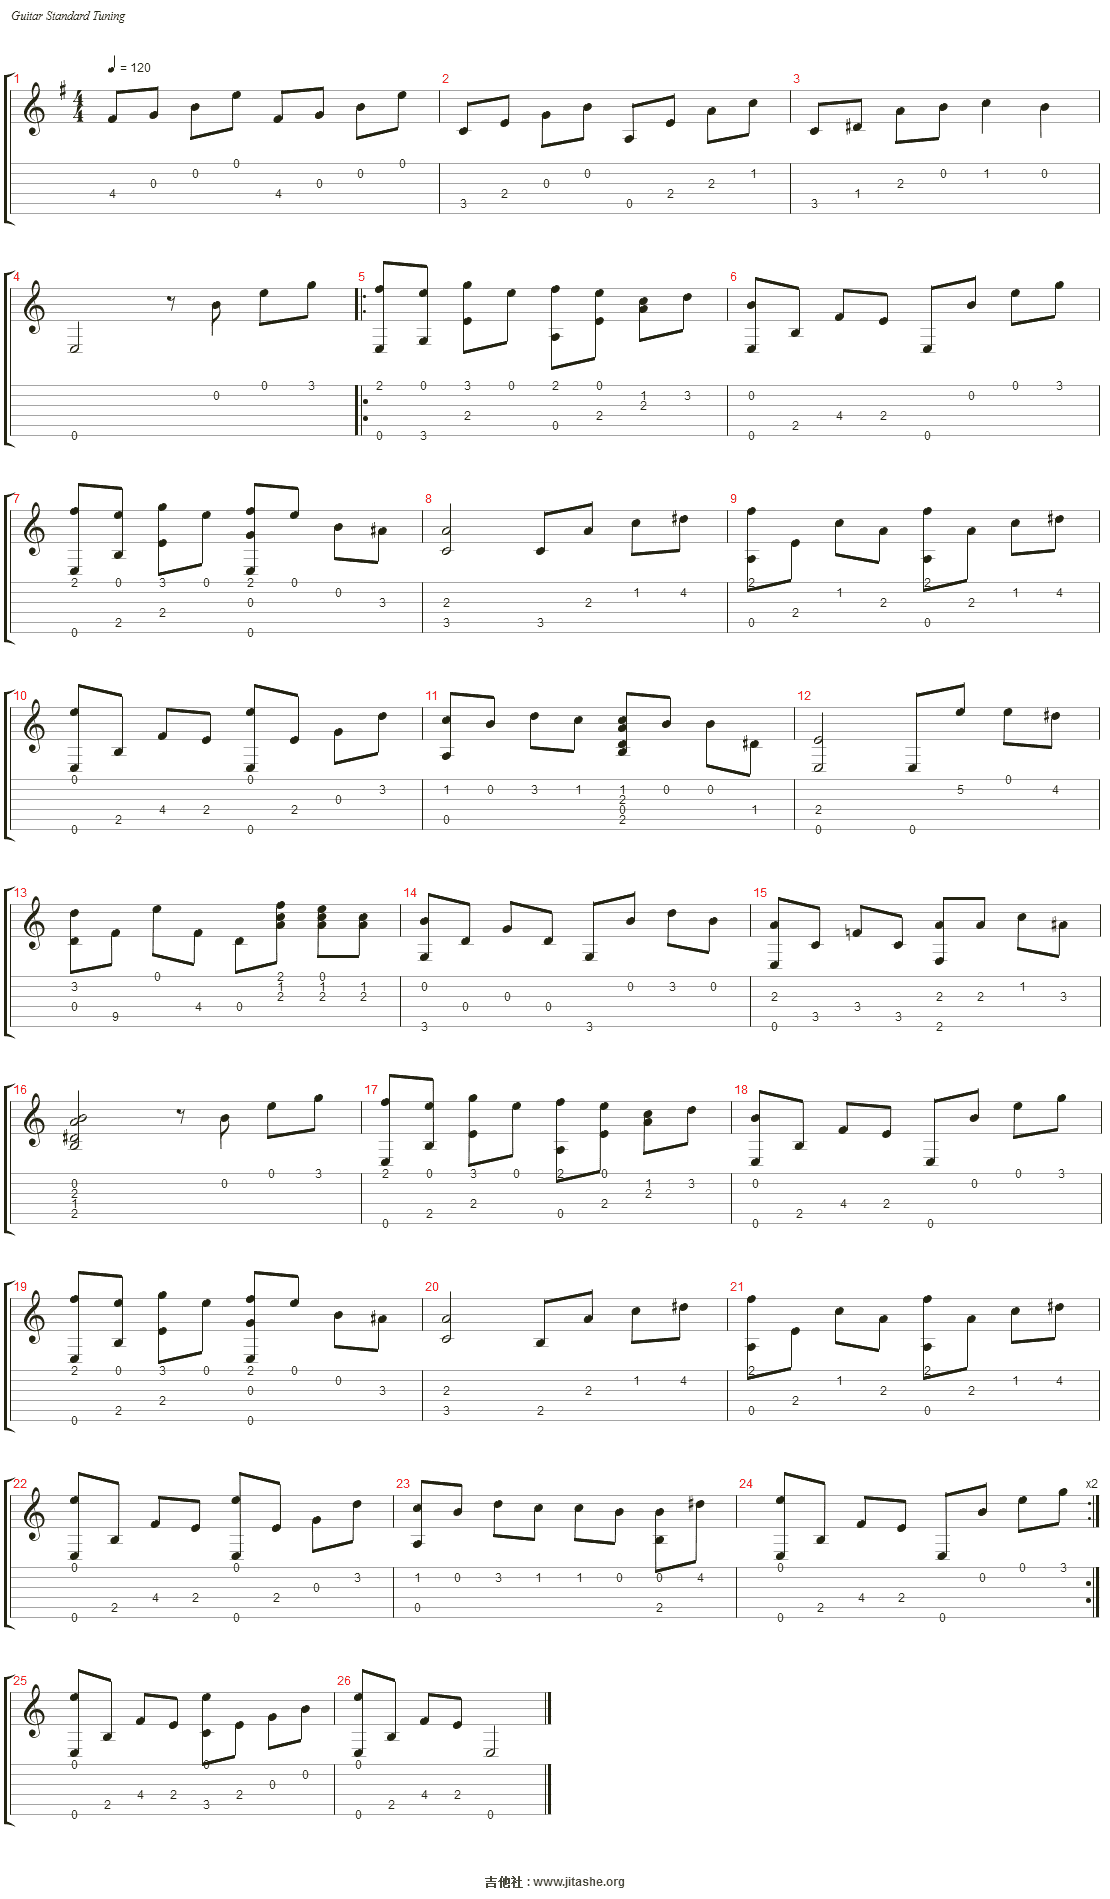 【熊驰吉他】《雨滴》5级曲目细致古典吉他教学-谱例同步_哔哩哔哩_bilibili